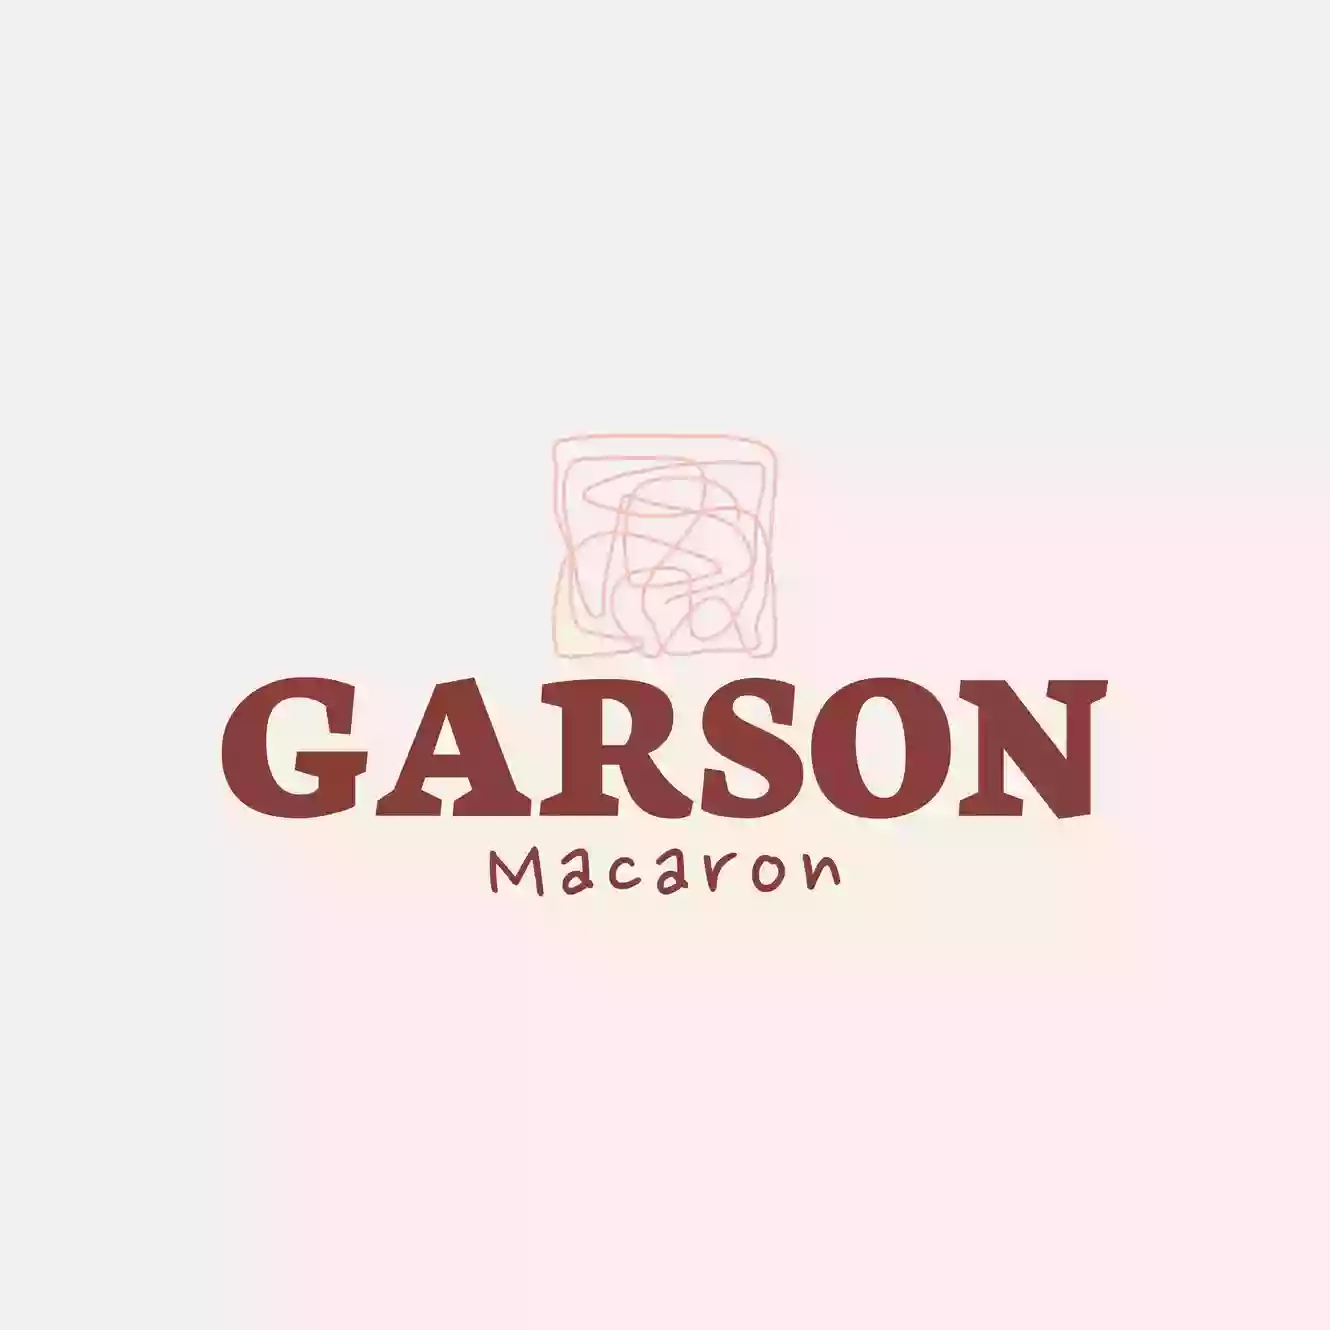 Garson Macaron